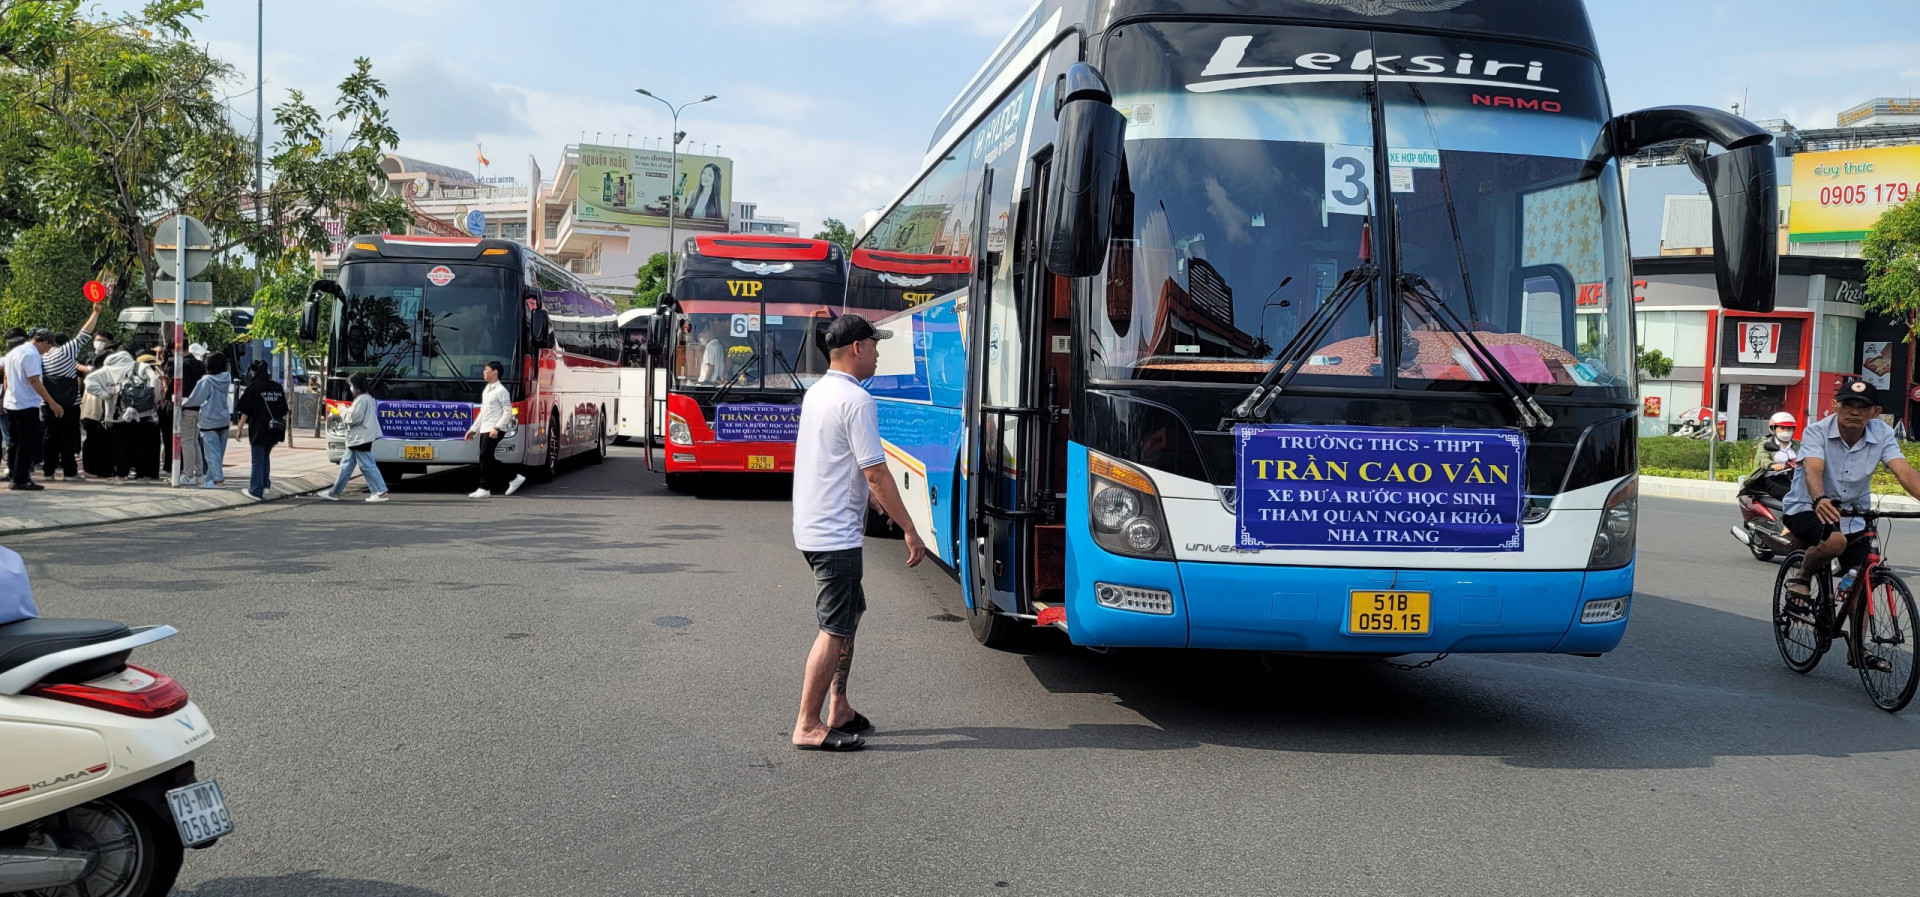 Xe ô tô chở khách trên 29 chỗ lưu thông vào TP. Nha Trang.